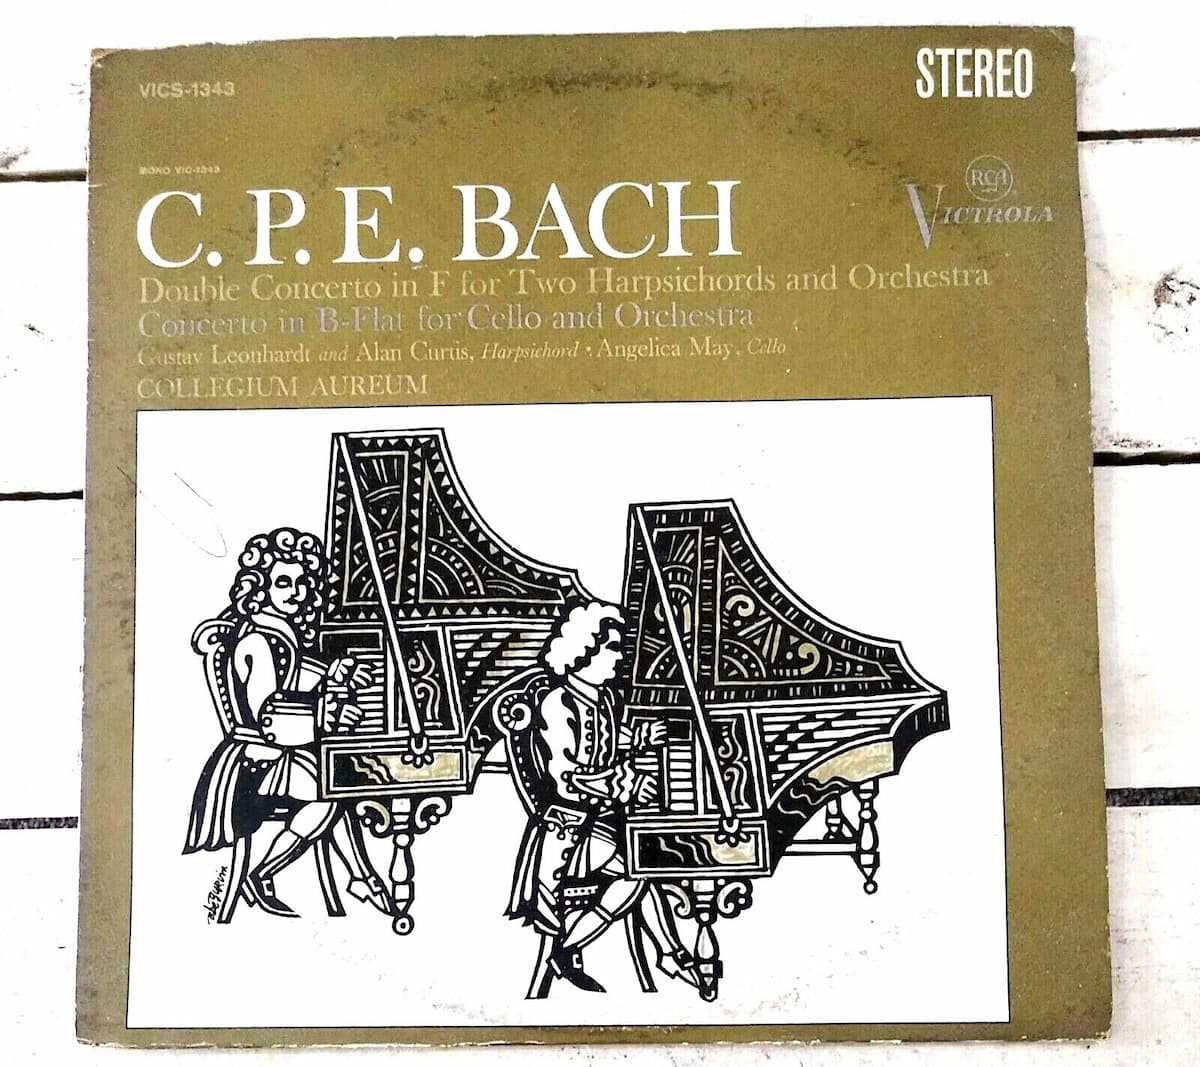 Recording cover of C.P.E. Bach's Double Concerto